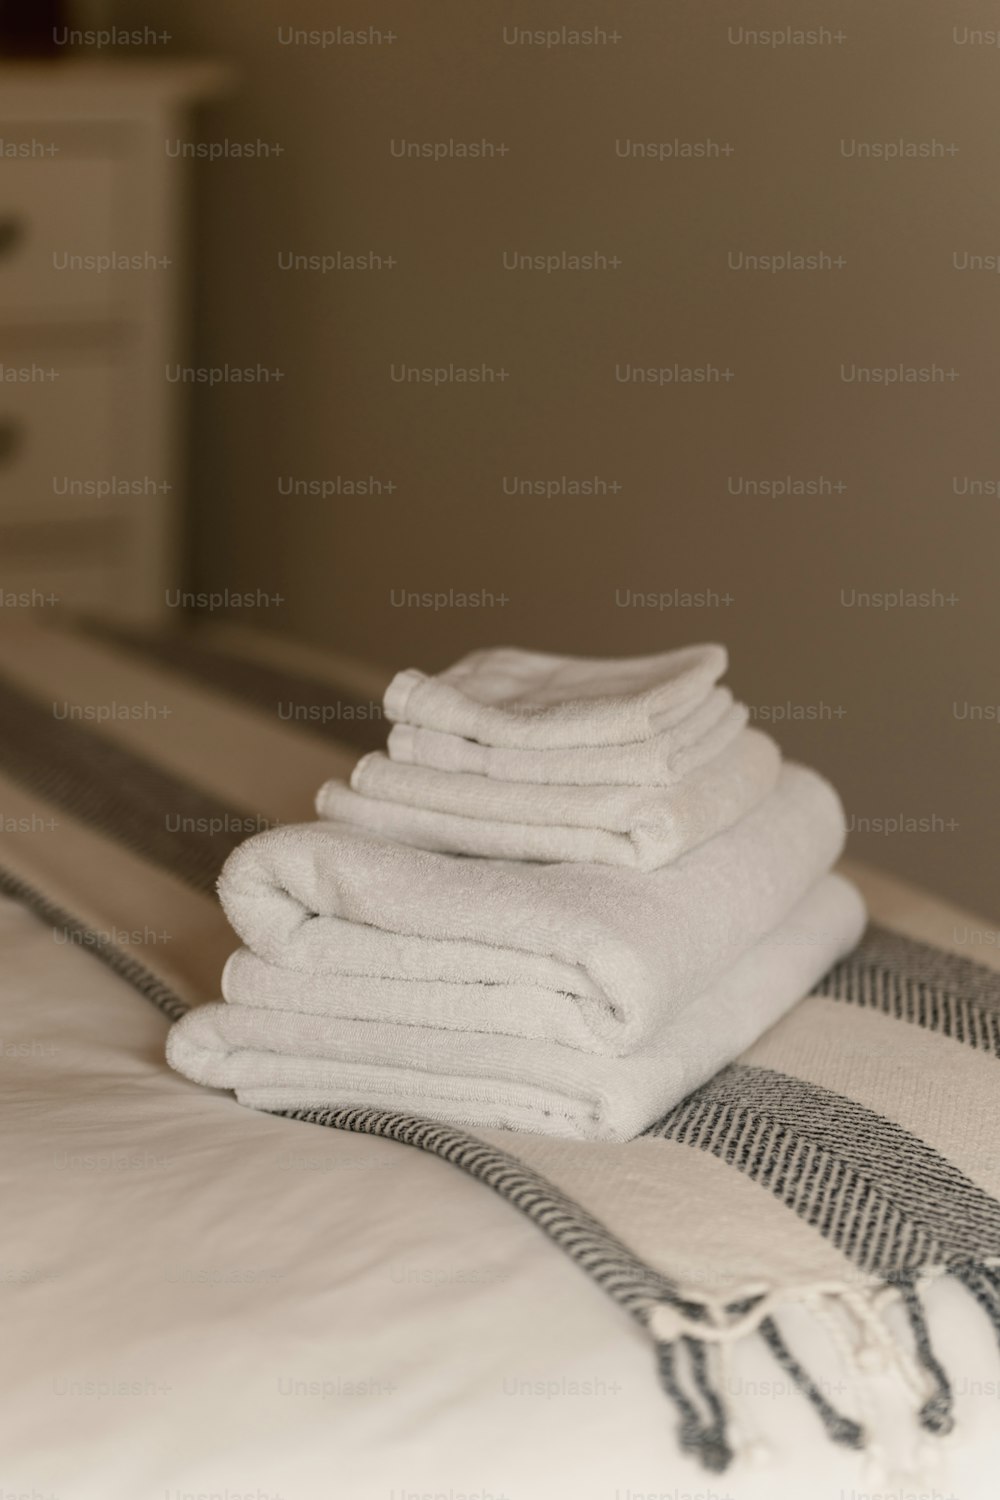 uma pilha de toalhas dobradas sentada em cima de uma cama